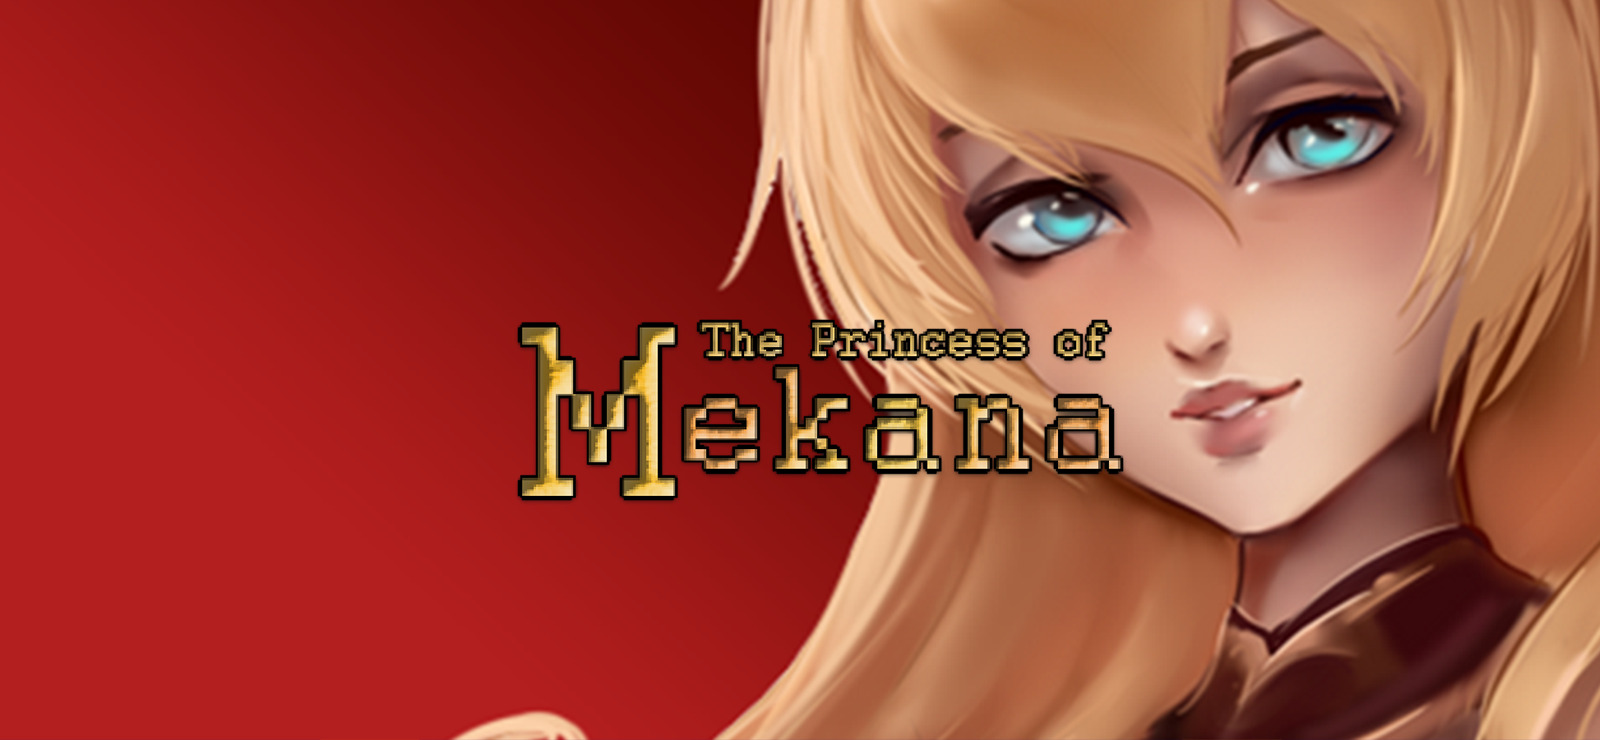 Princess of Mekana on GOG.com